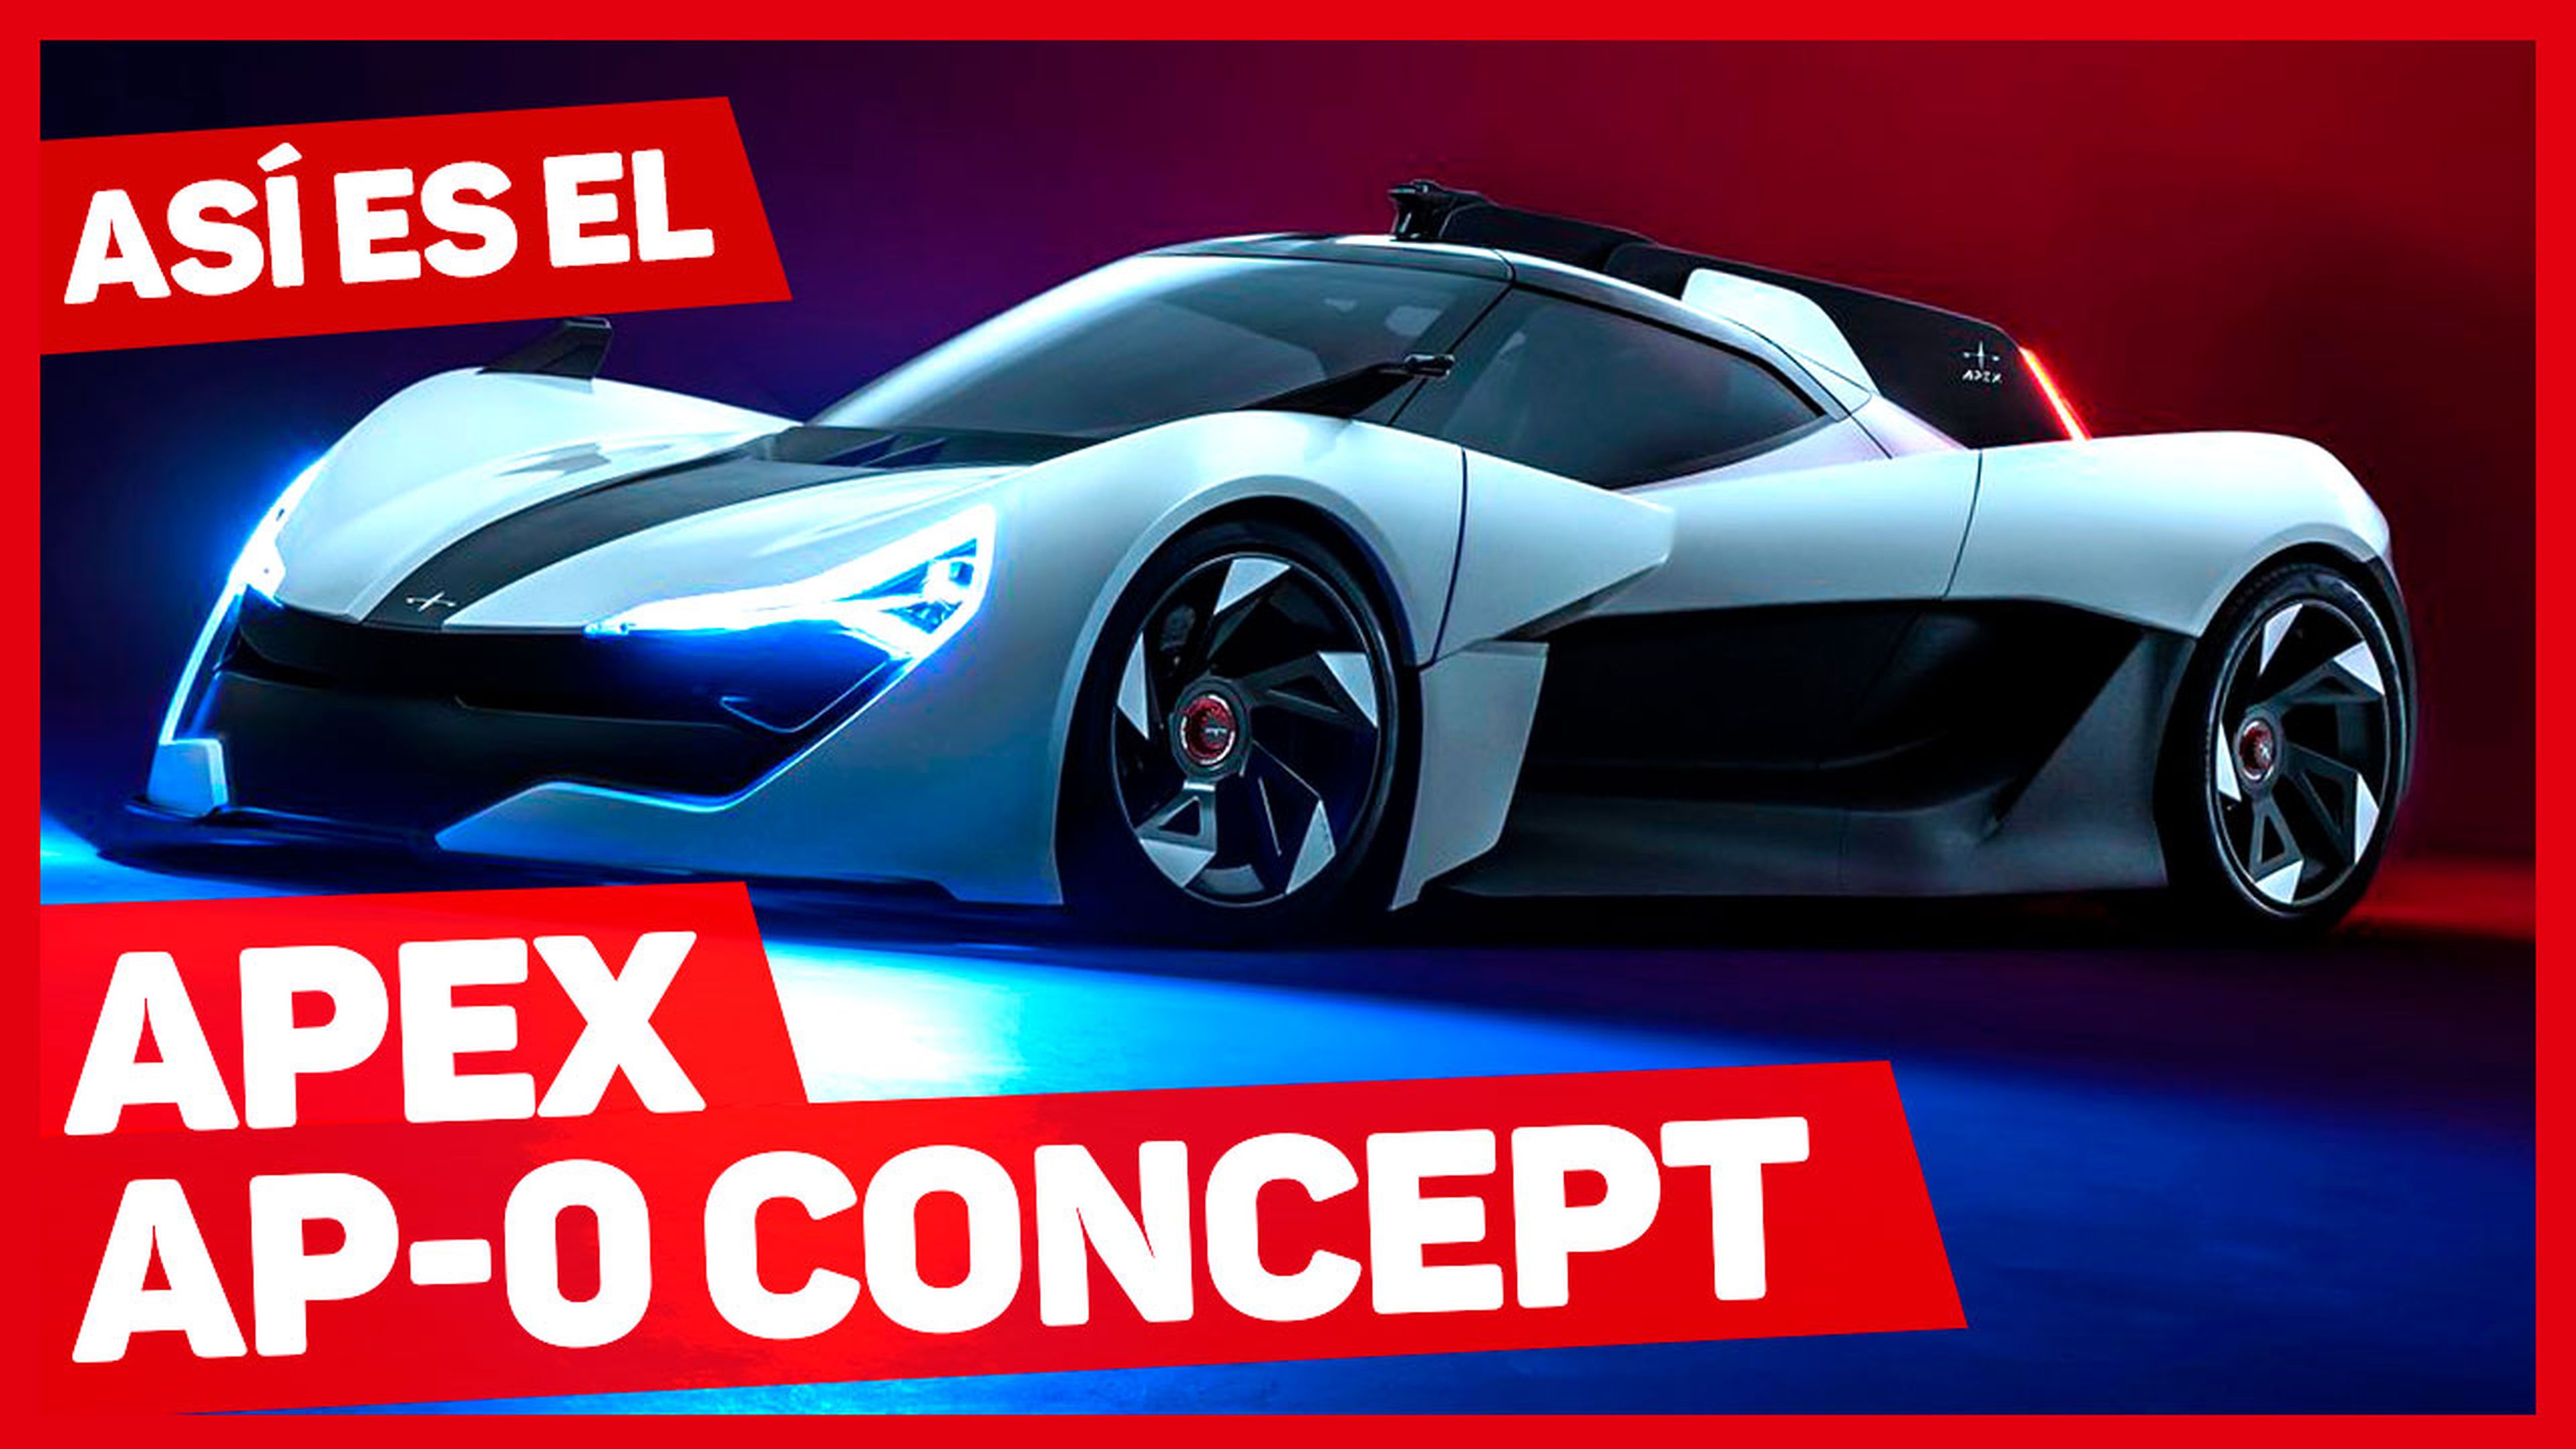 VÍDEO: ¿Qué invento es este? Se llama Apex AP-0 Concept y hace el 0-100 km/h en 2,3 segundos